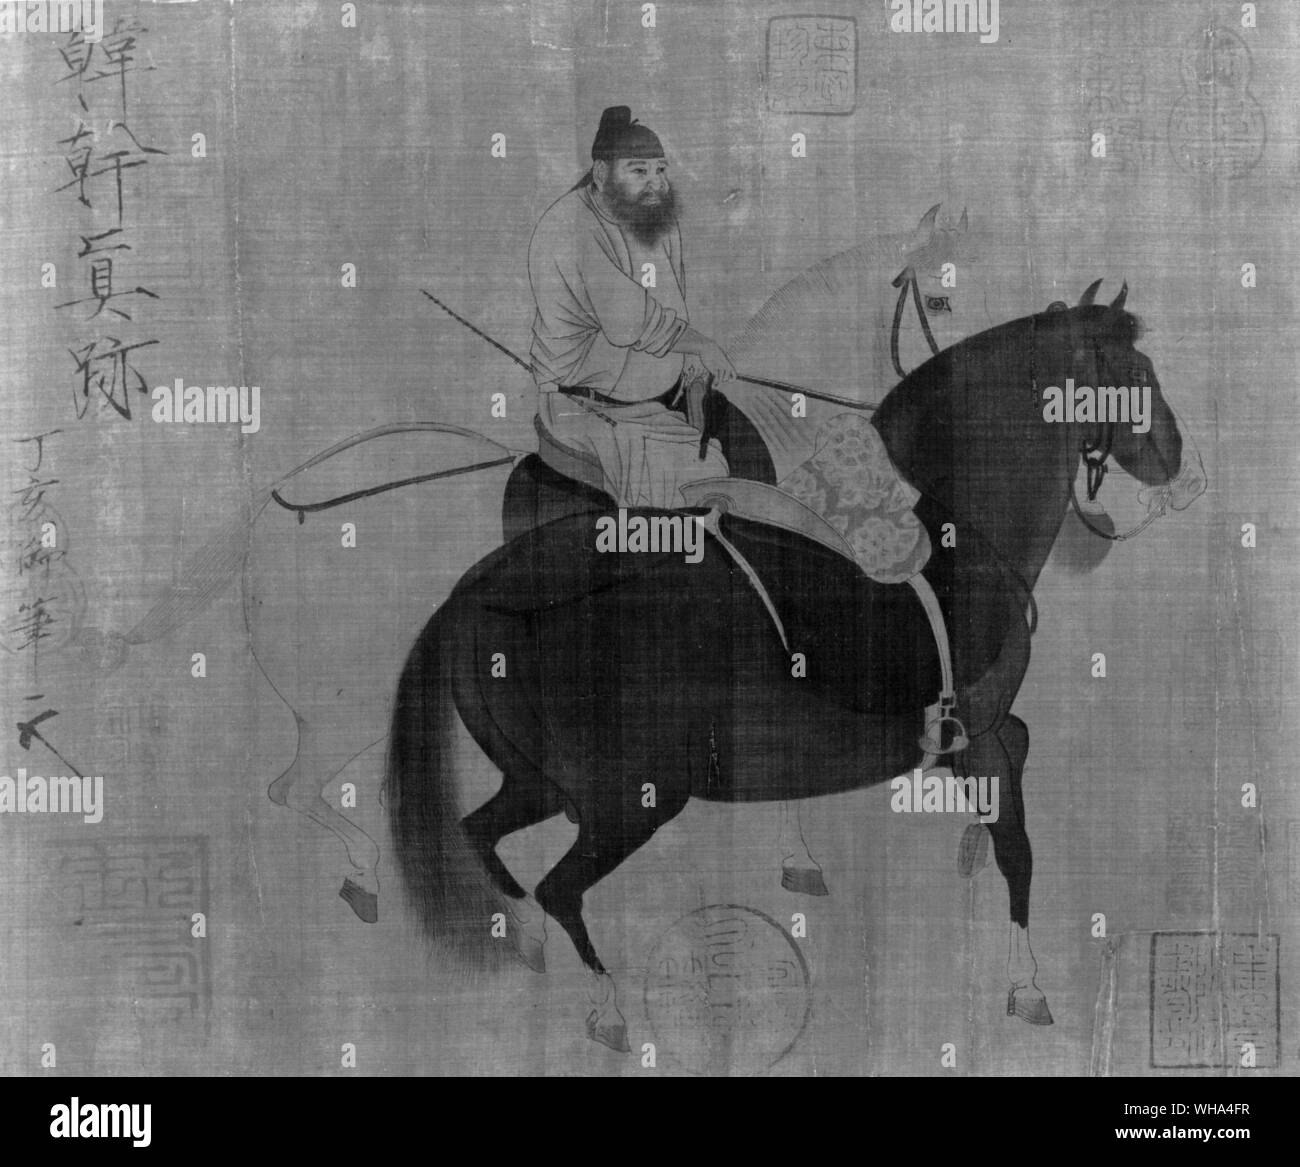 Han Kan. Peintre Tang 618-906. Han-Kan vivaient dans Chang-an, capitale de la dynastie des Tang (618 -907). Il peint des peintures murales Bouddhistes et Taoïstes, mais est devenu célèbre surtout pour sa grande compositions de peintures à cheval qui a représenté l'esprit chevaleresque de son temps. Il est considéré comme l'un des plus grands artistes du maître chinois classique peinture animale. Banque D'Images